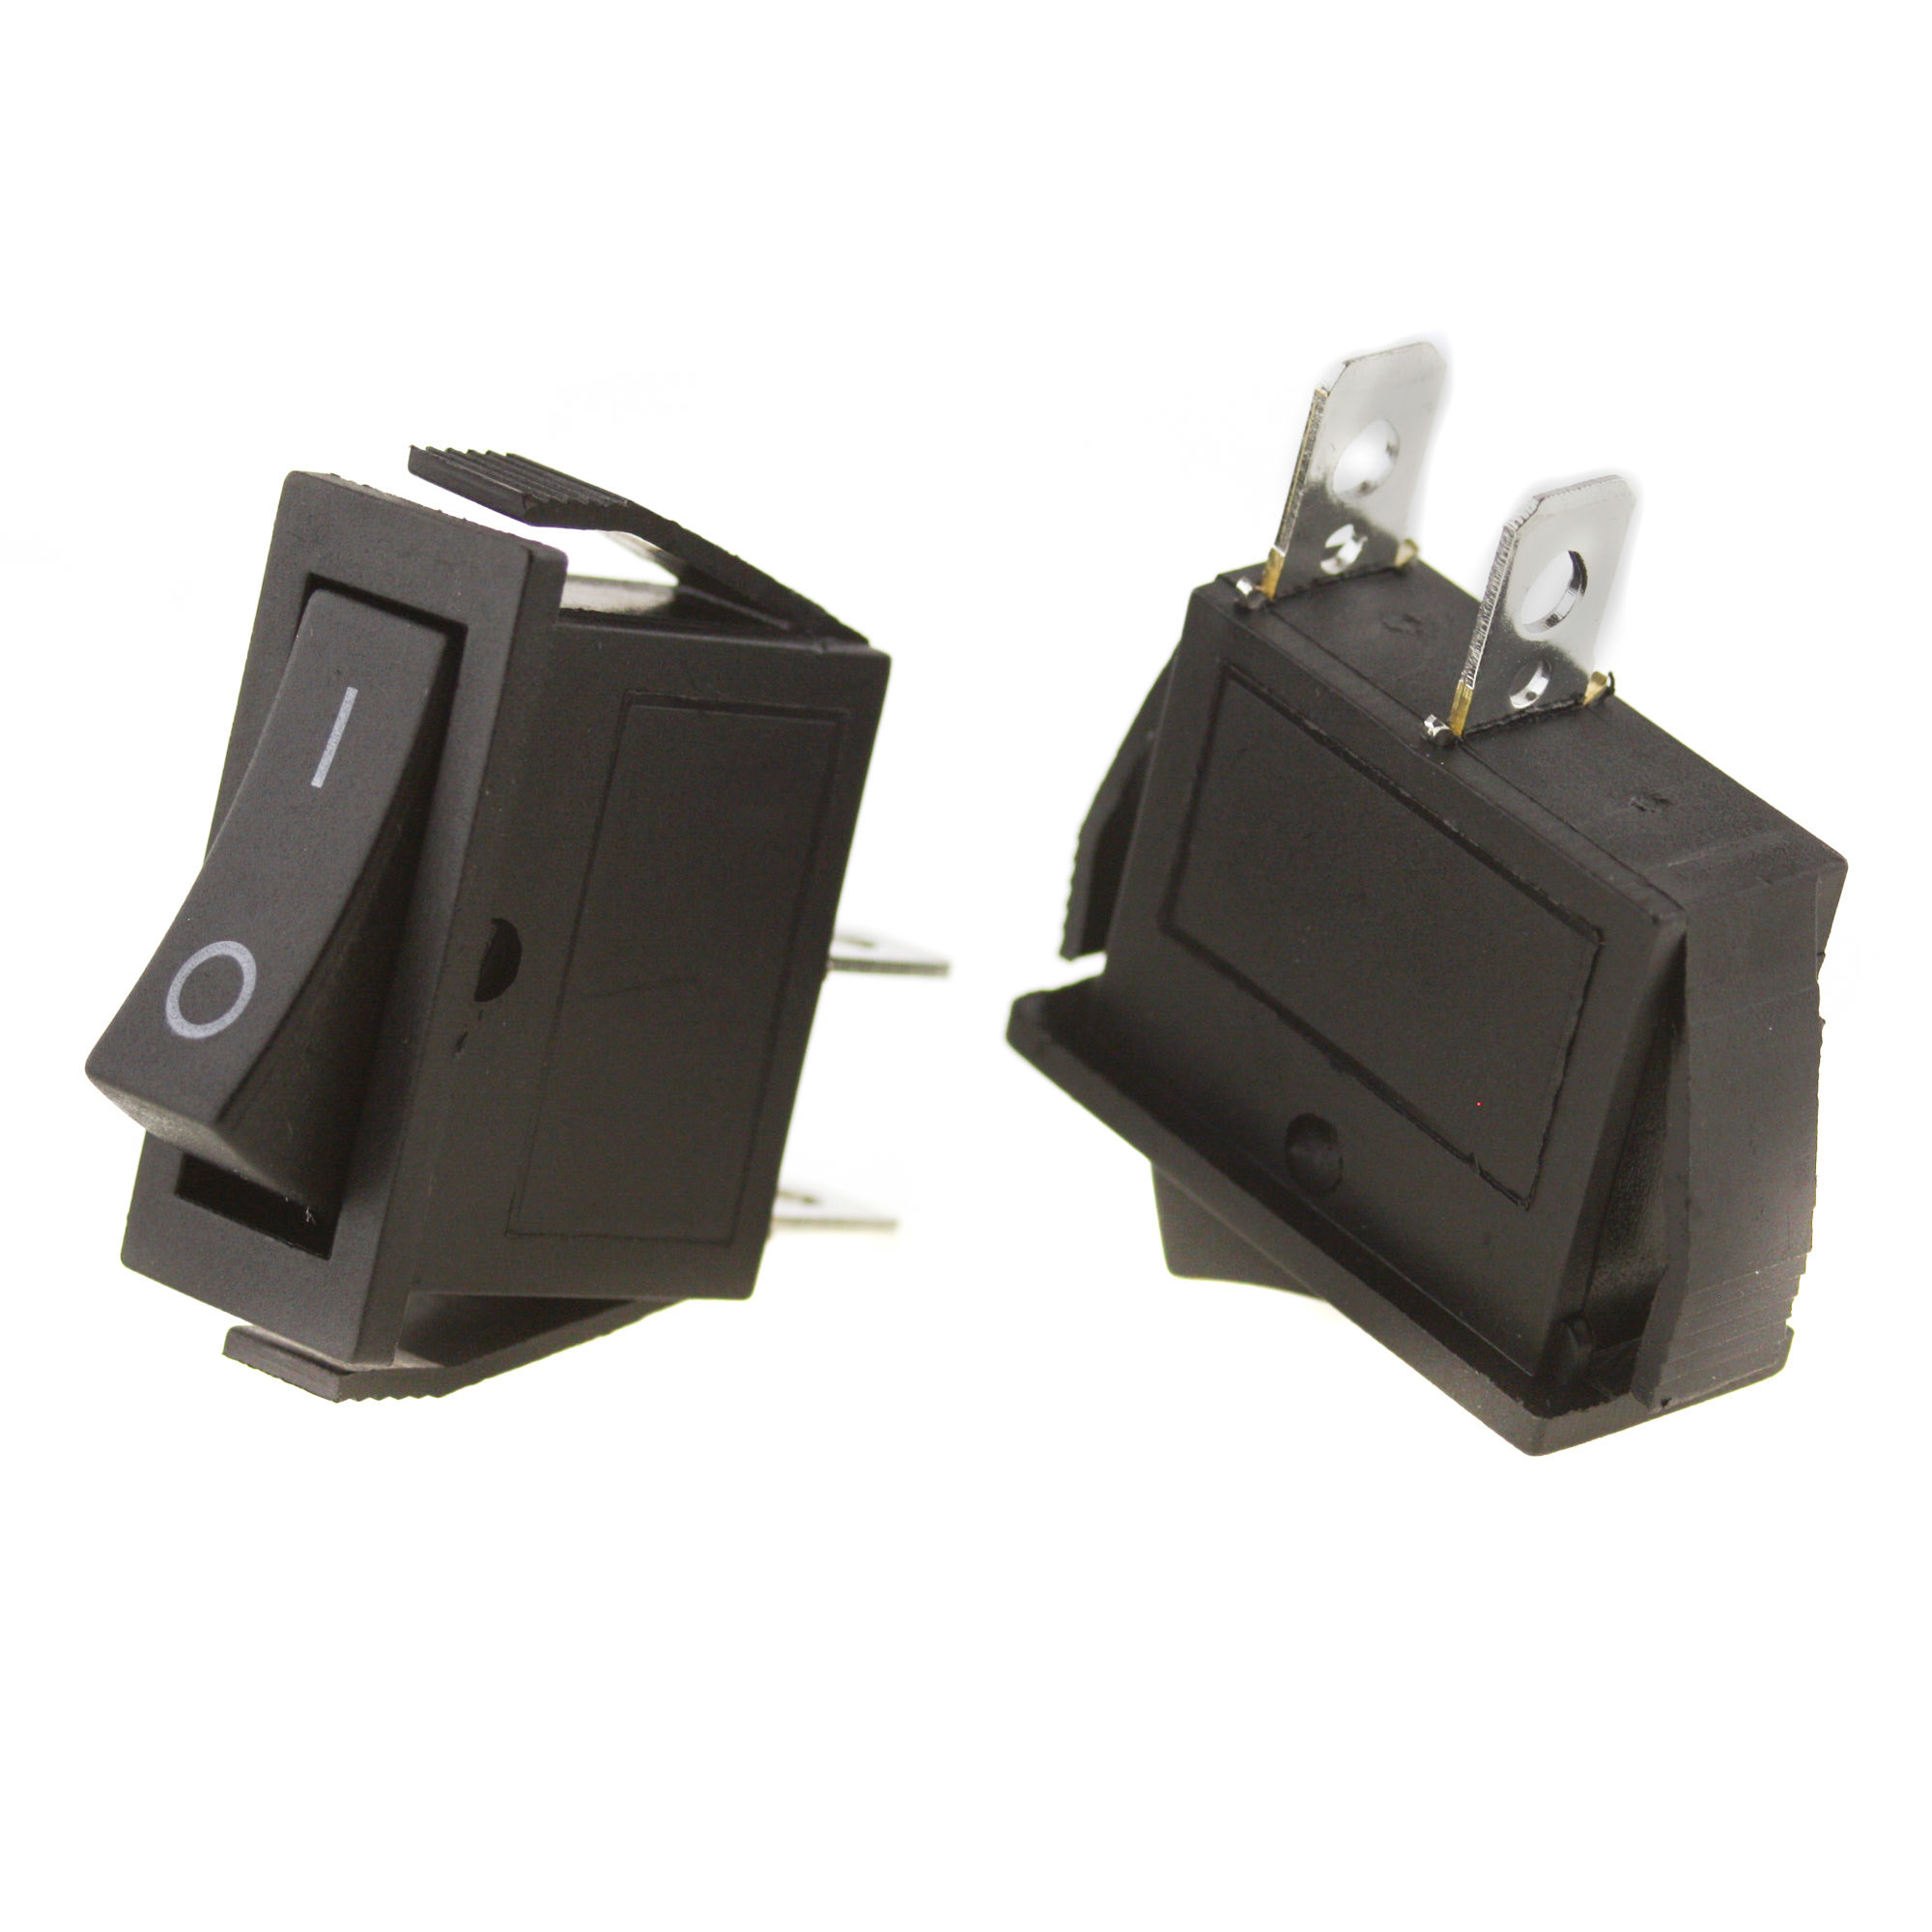 Switch I-0 250V 6A, 31x14mm, black - 5 pcs